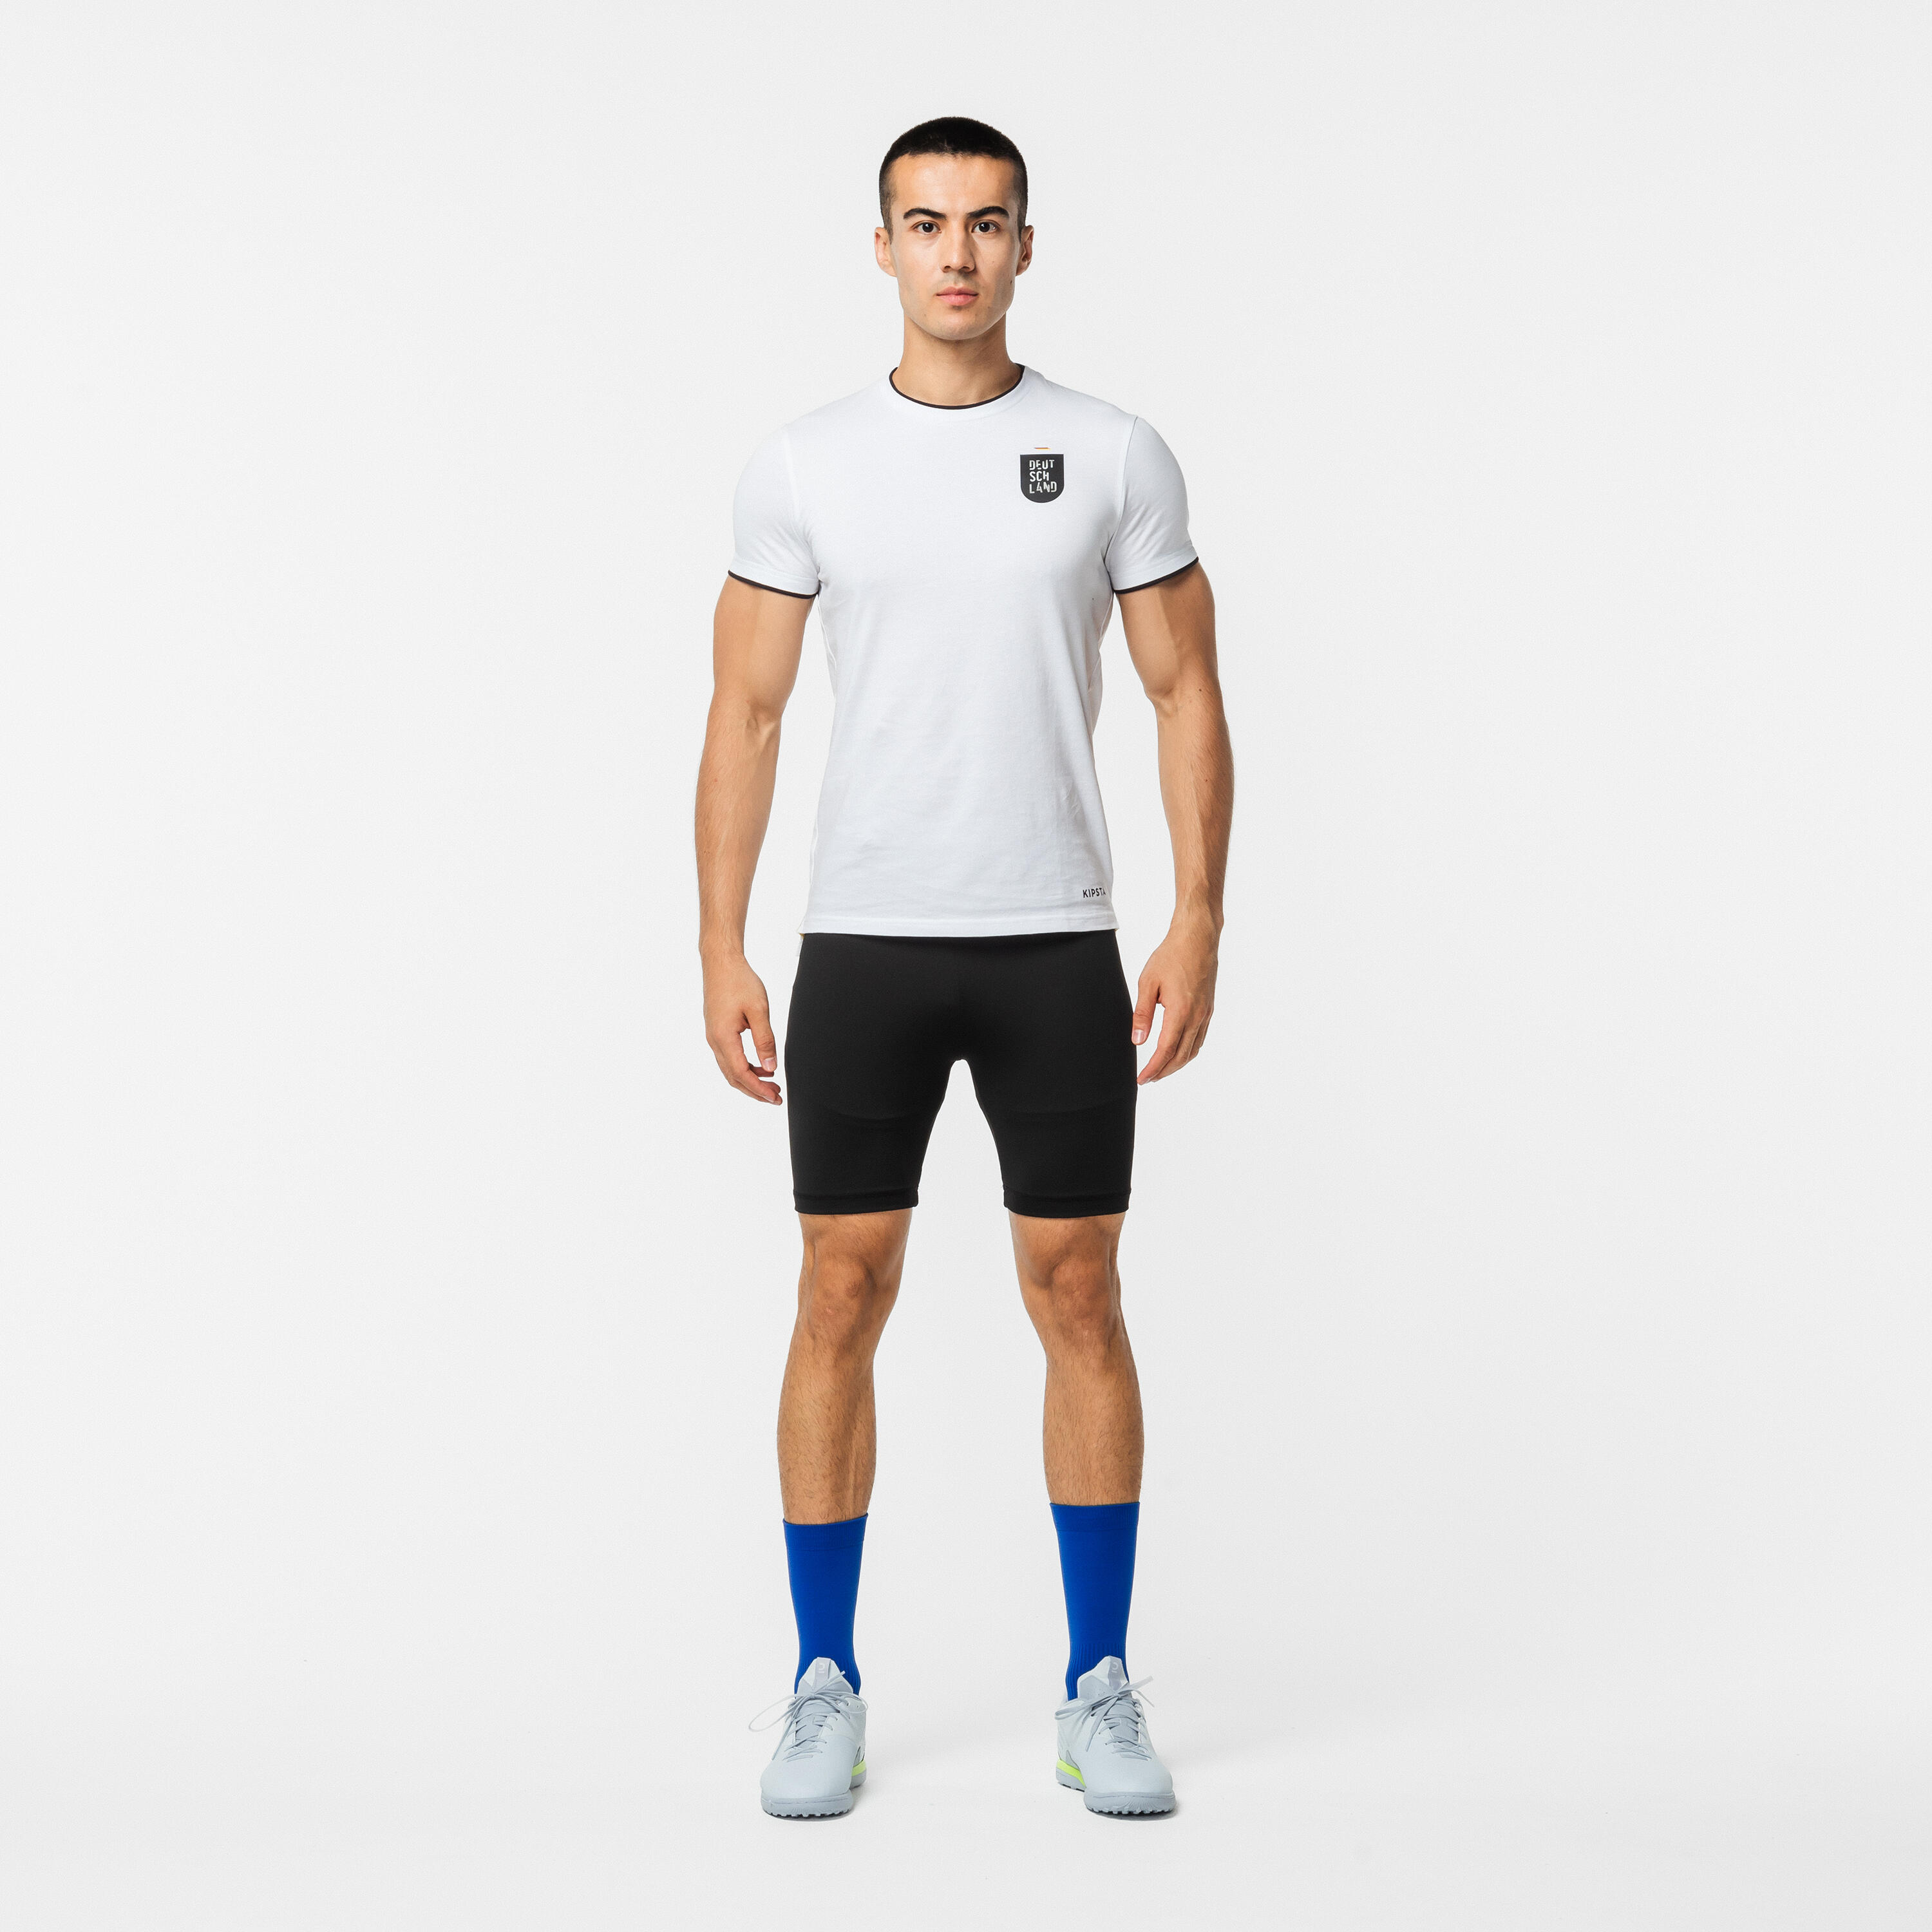 Men's Soccer Undershorts - Keepcomfort 100 Black - KIPSTA